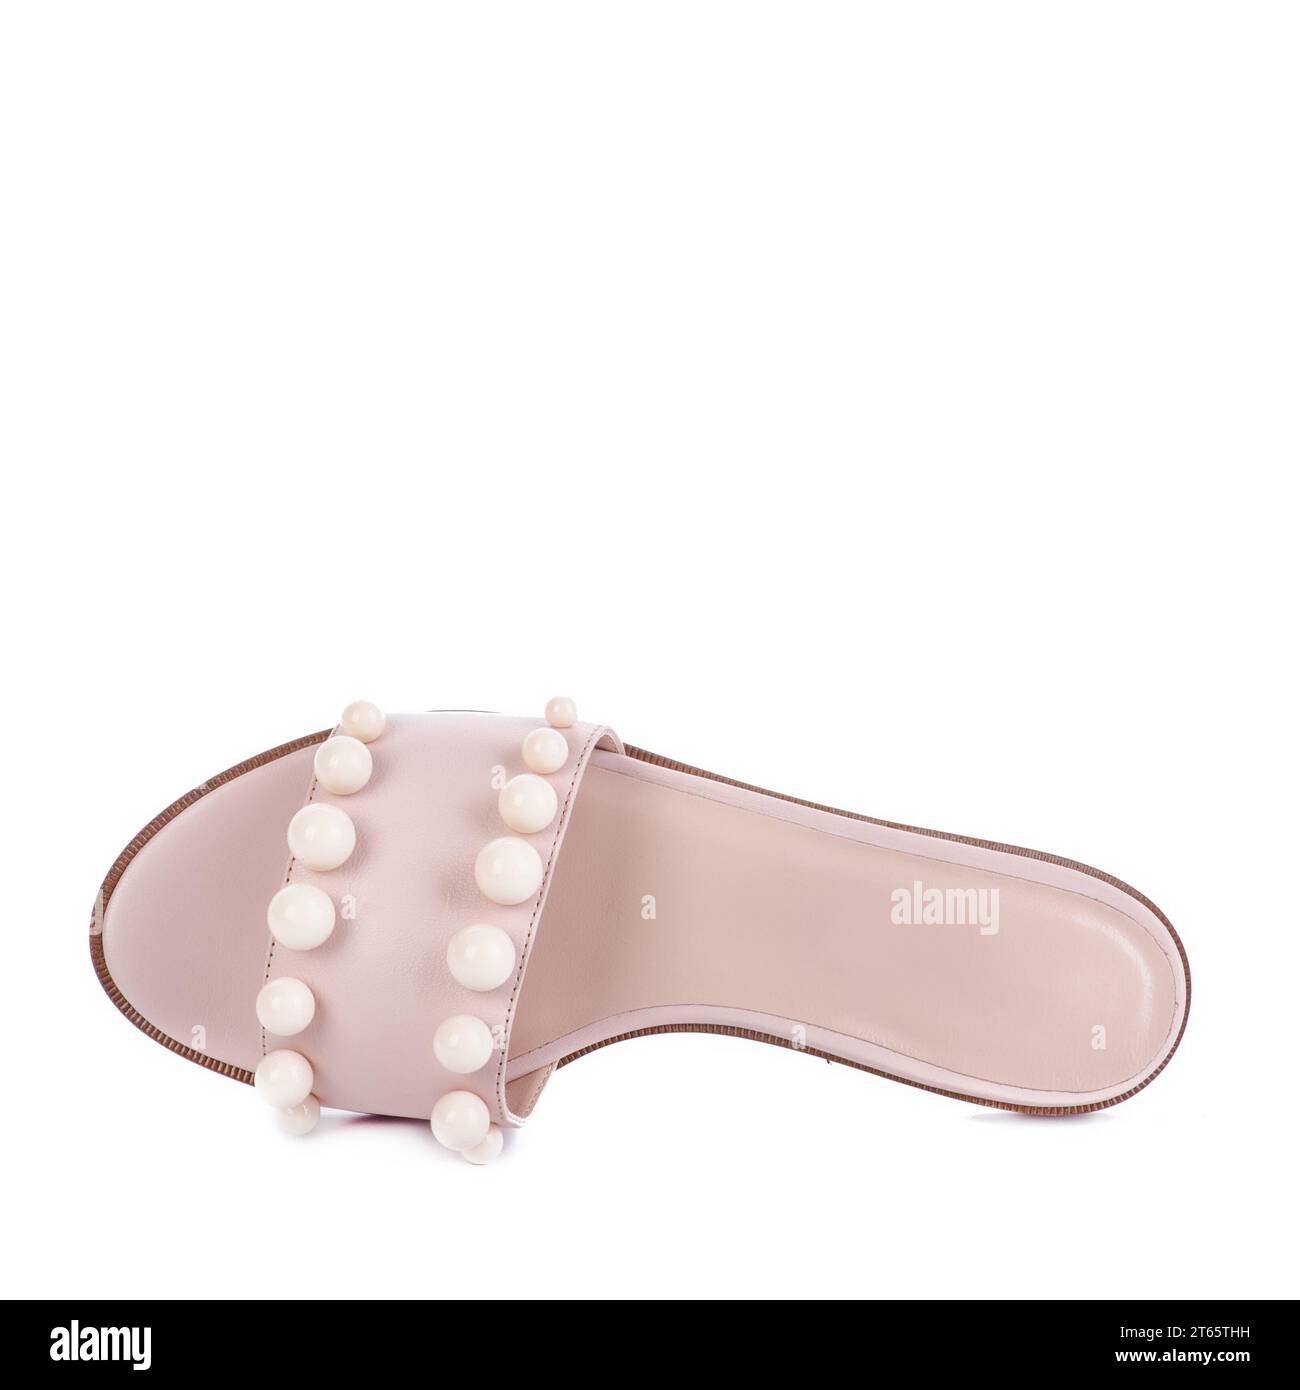 Sandale moderne en cuir beige à glissière pour femmes décorée de grandes perles isolées sur un fond blanc. Conception créative pour la publicité de magasin de chaussures pos Banque D'Images